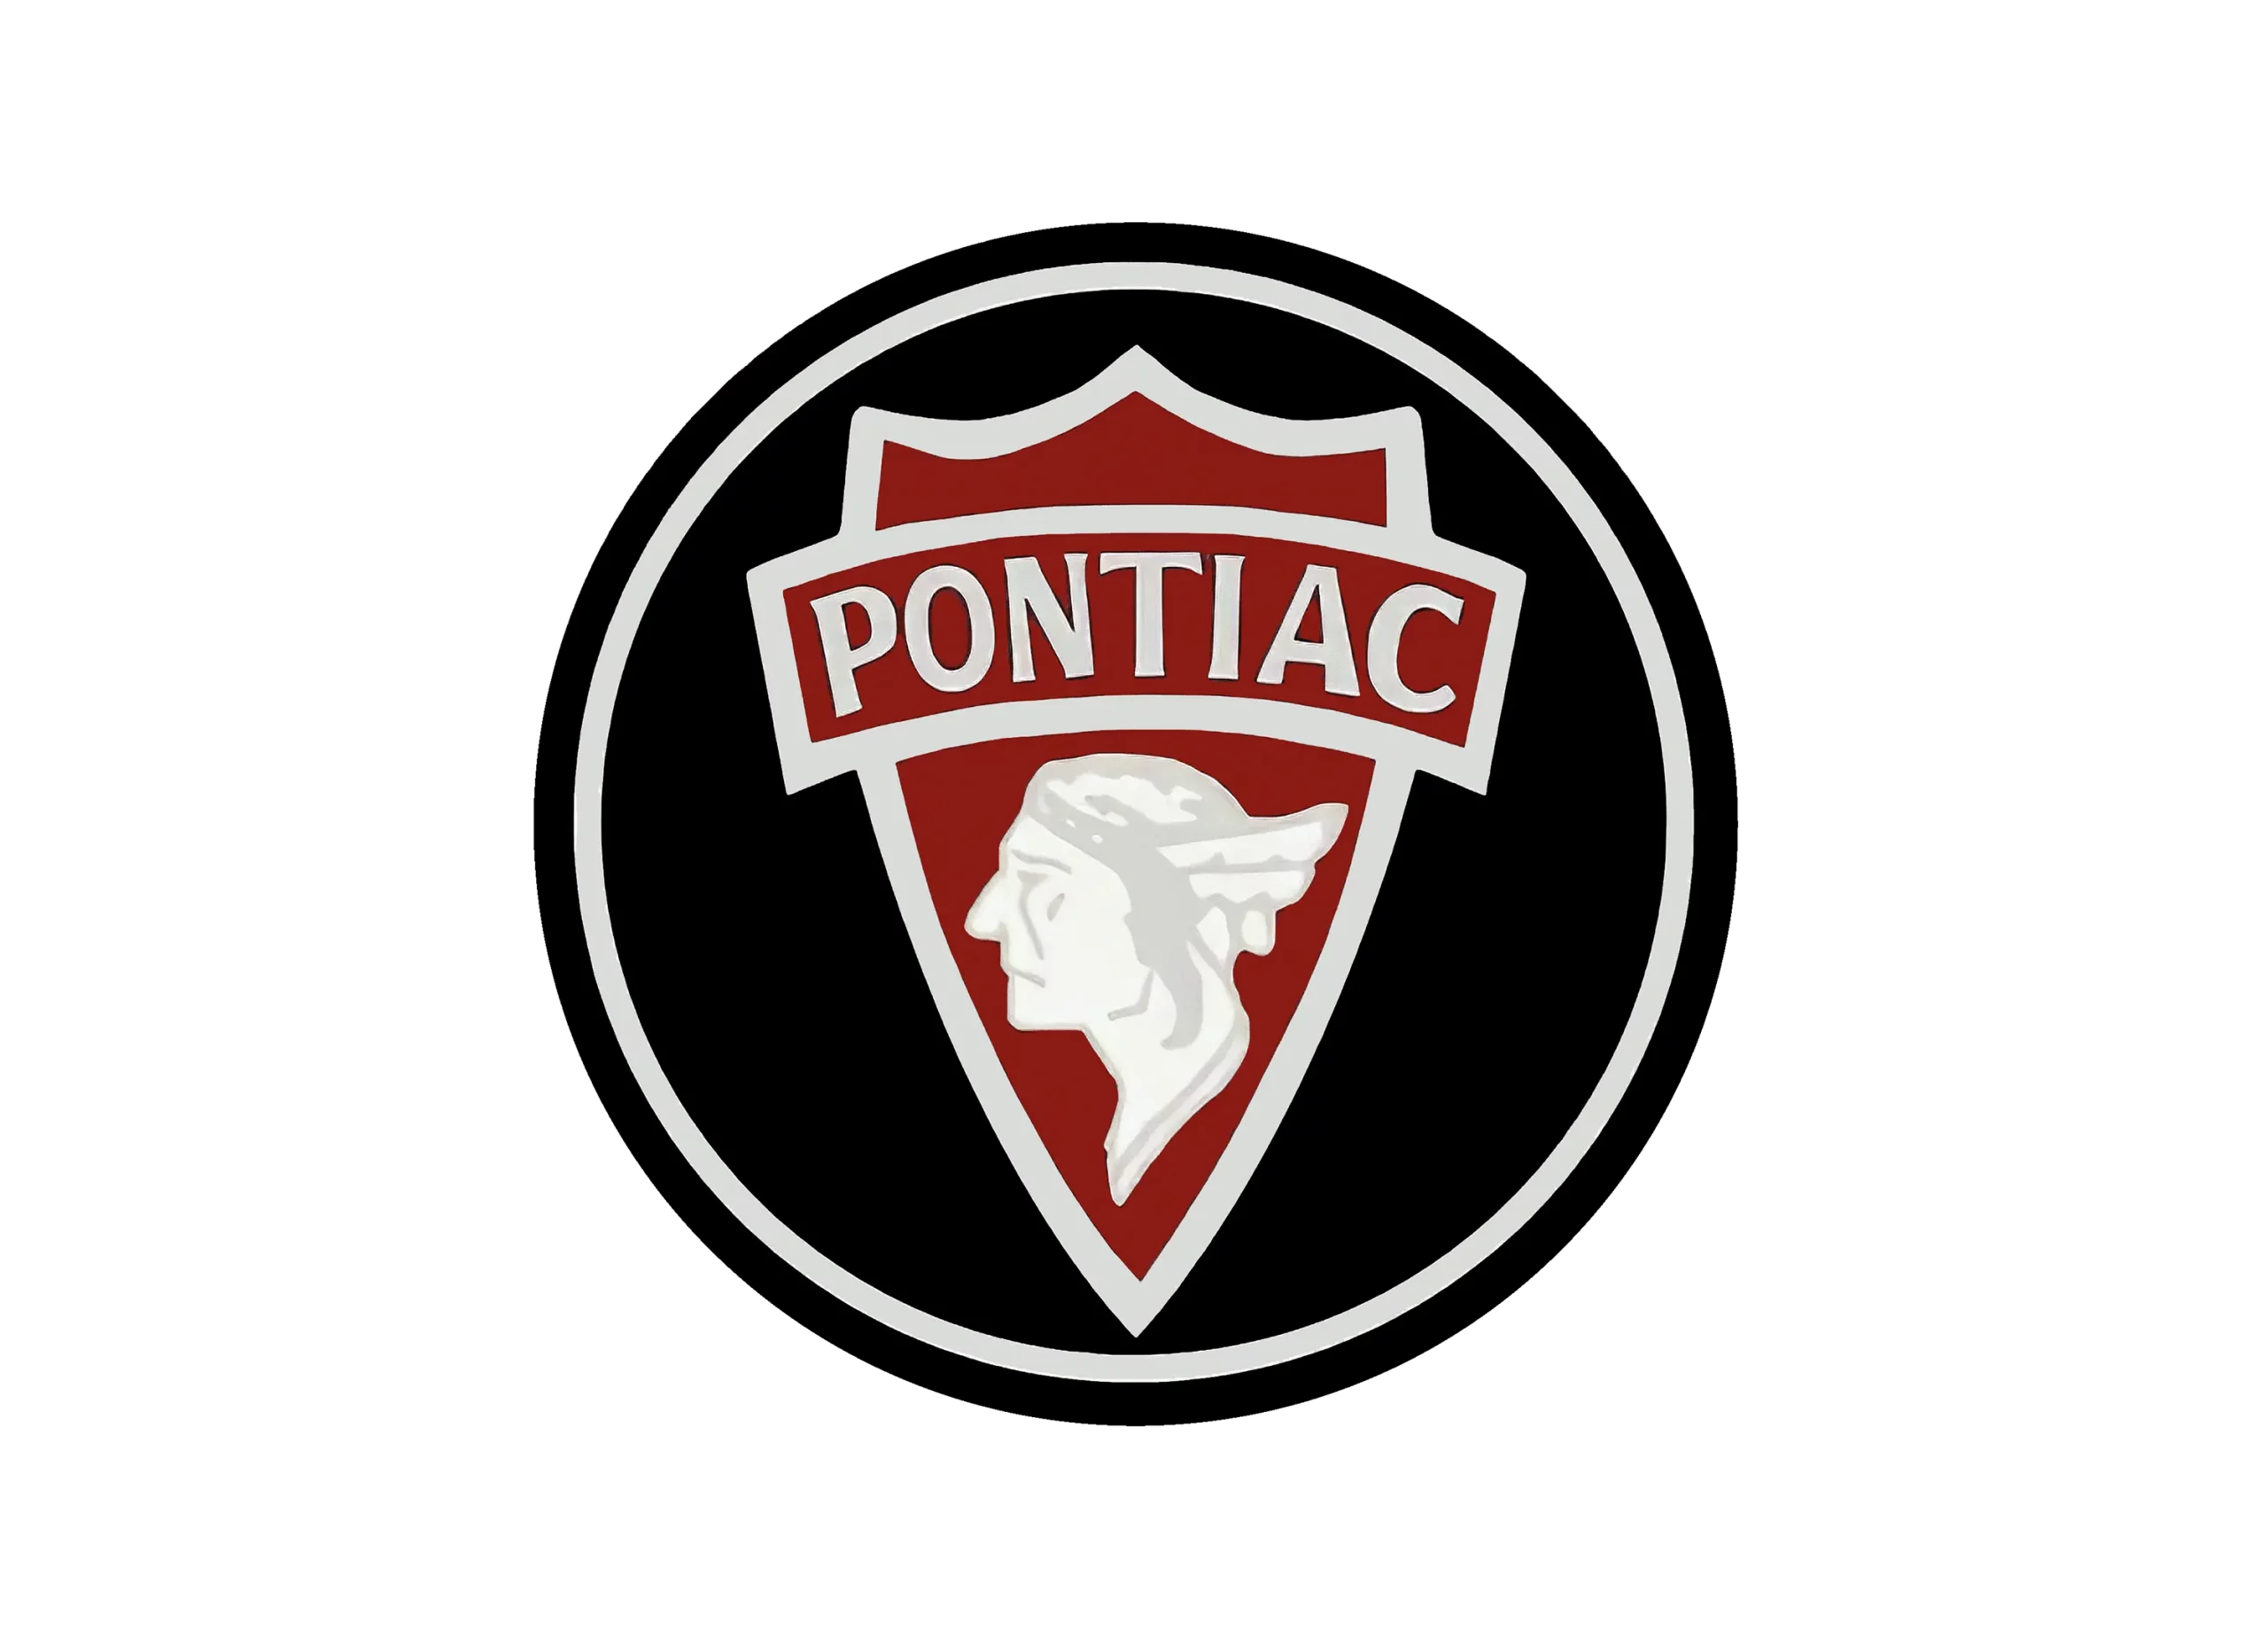 Pontiac logo 1926-1930